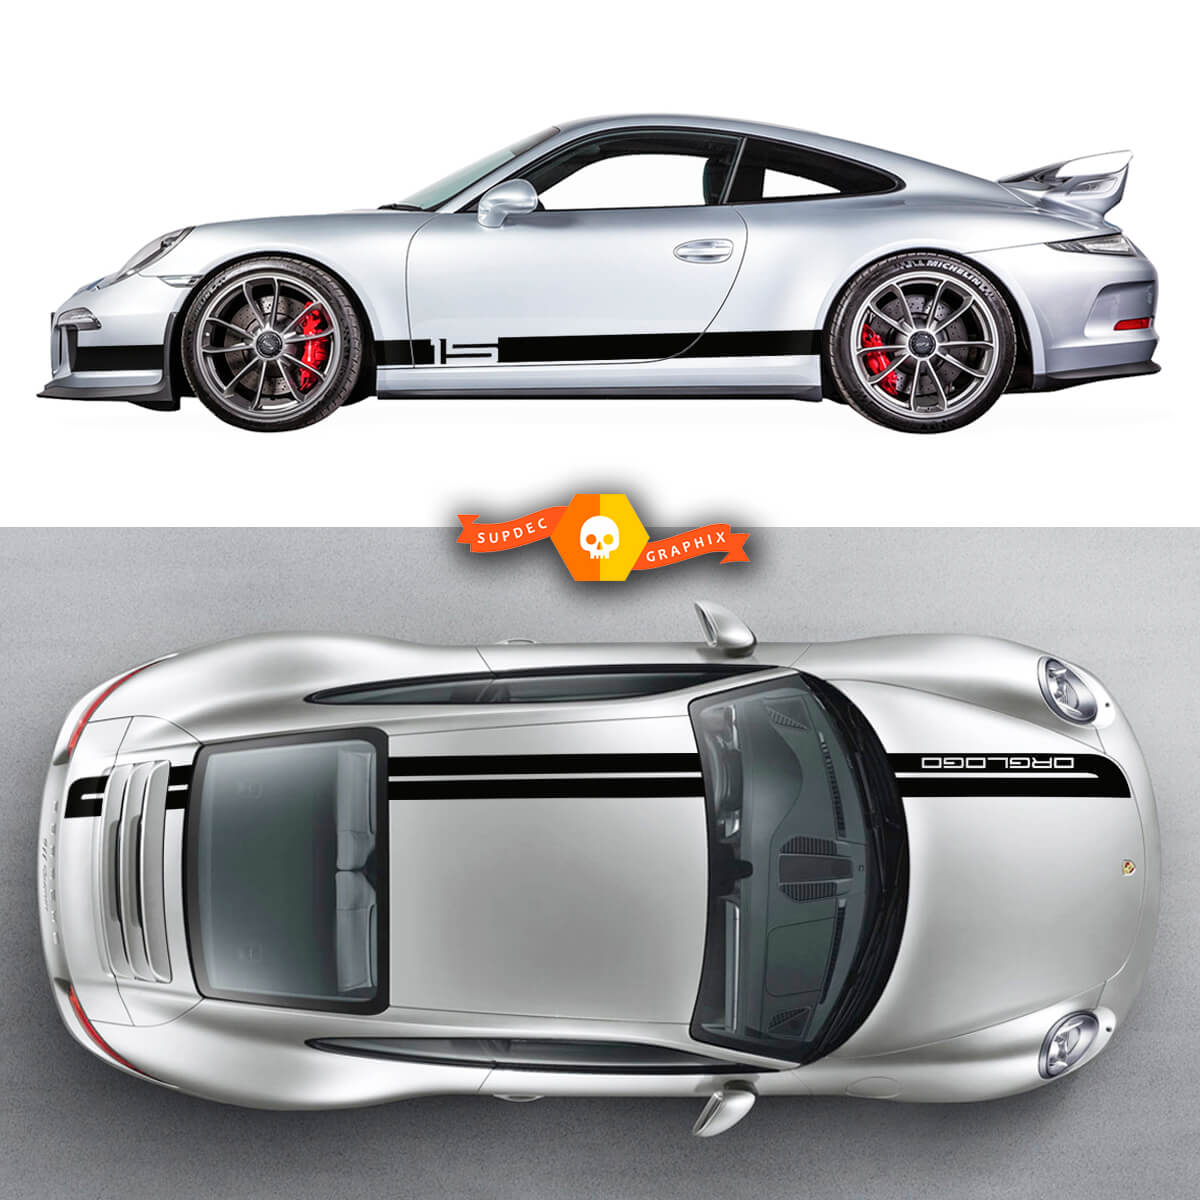 2 Porsche Sport Cup Edition Rennseitenstreifen Carrera Roof Stripes Türen Kit Aufkleber